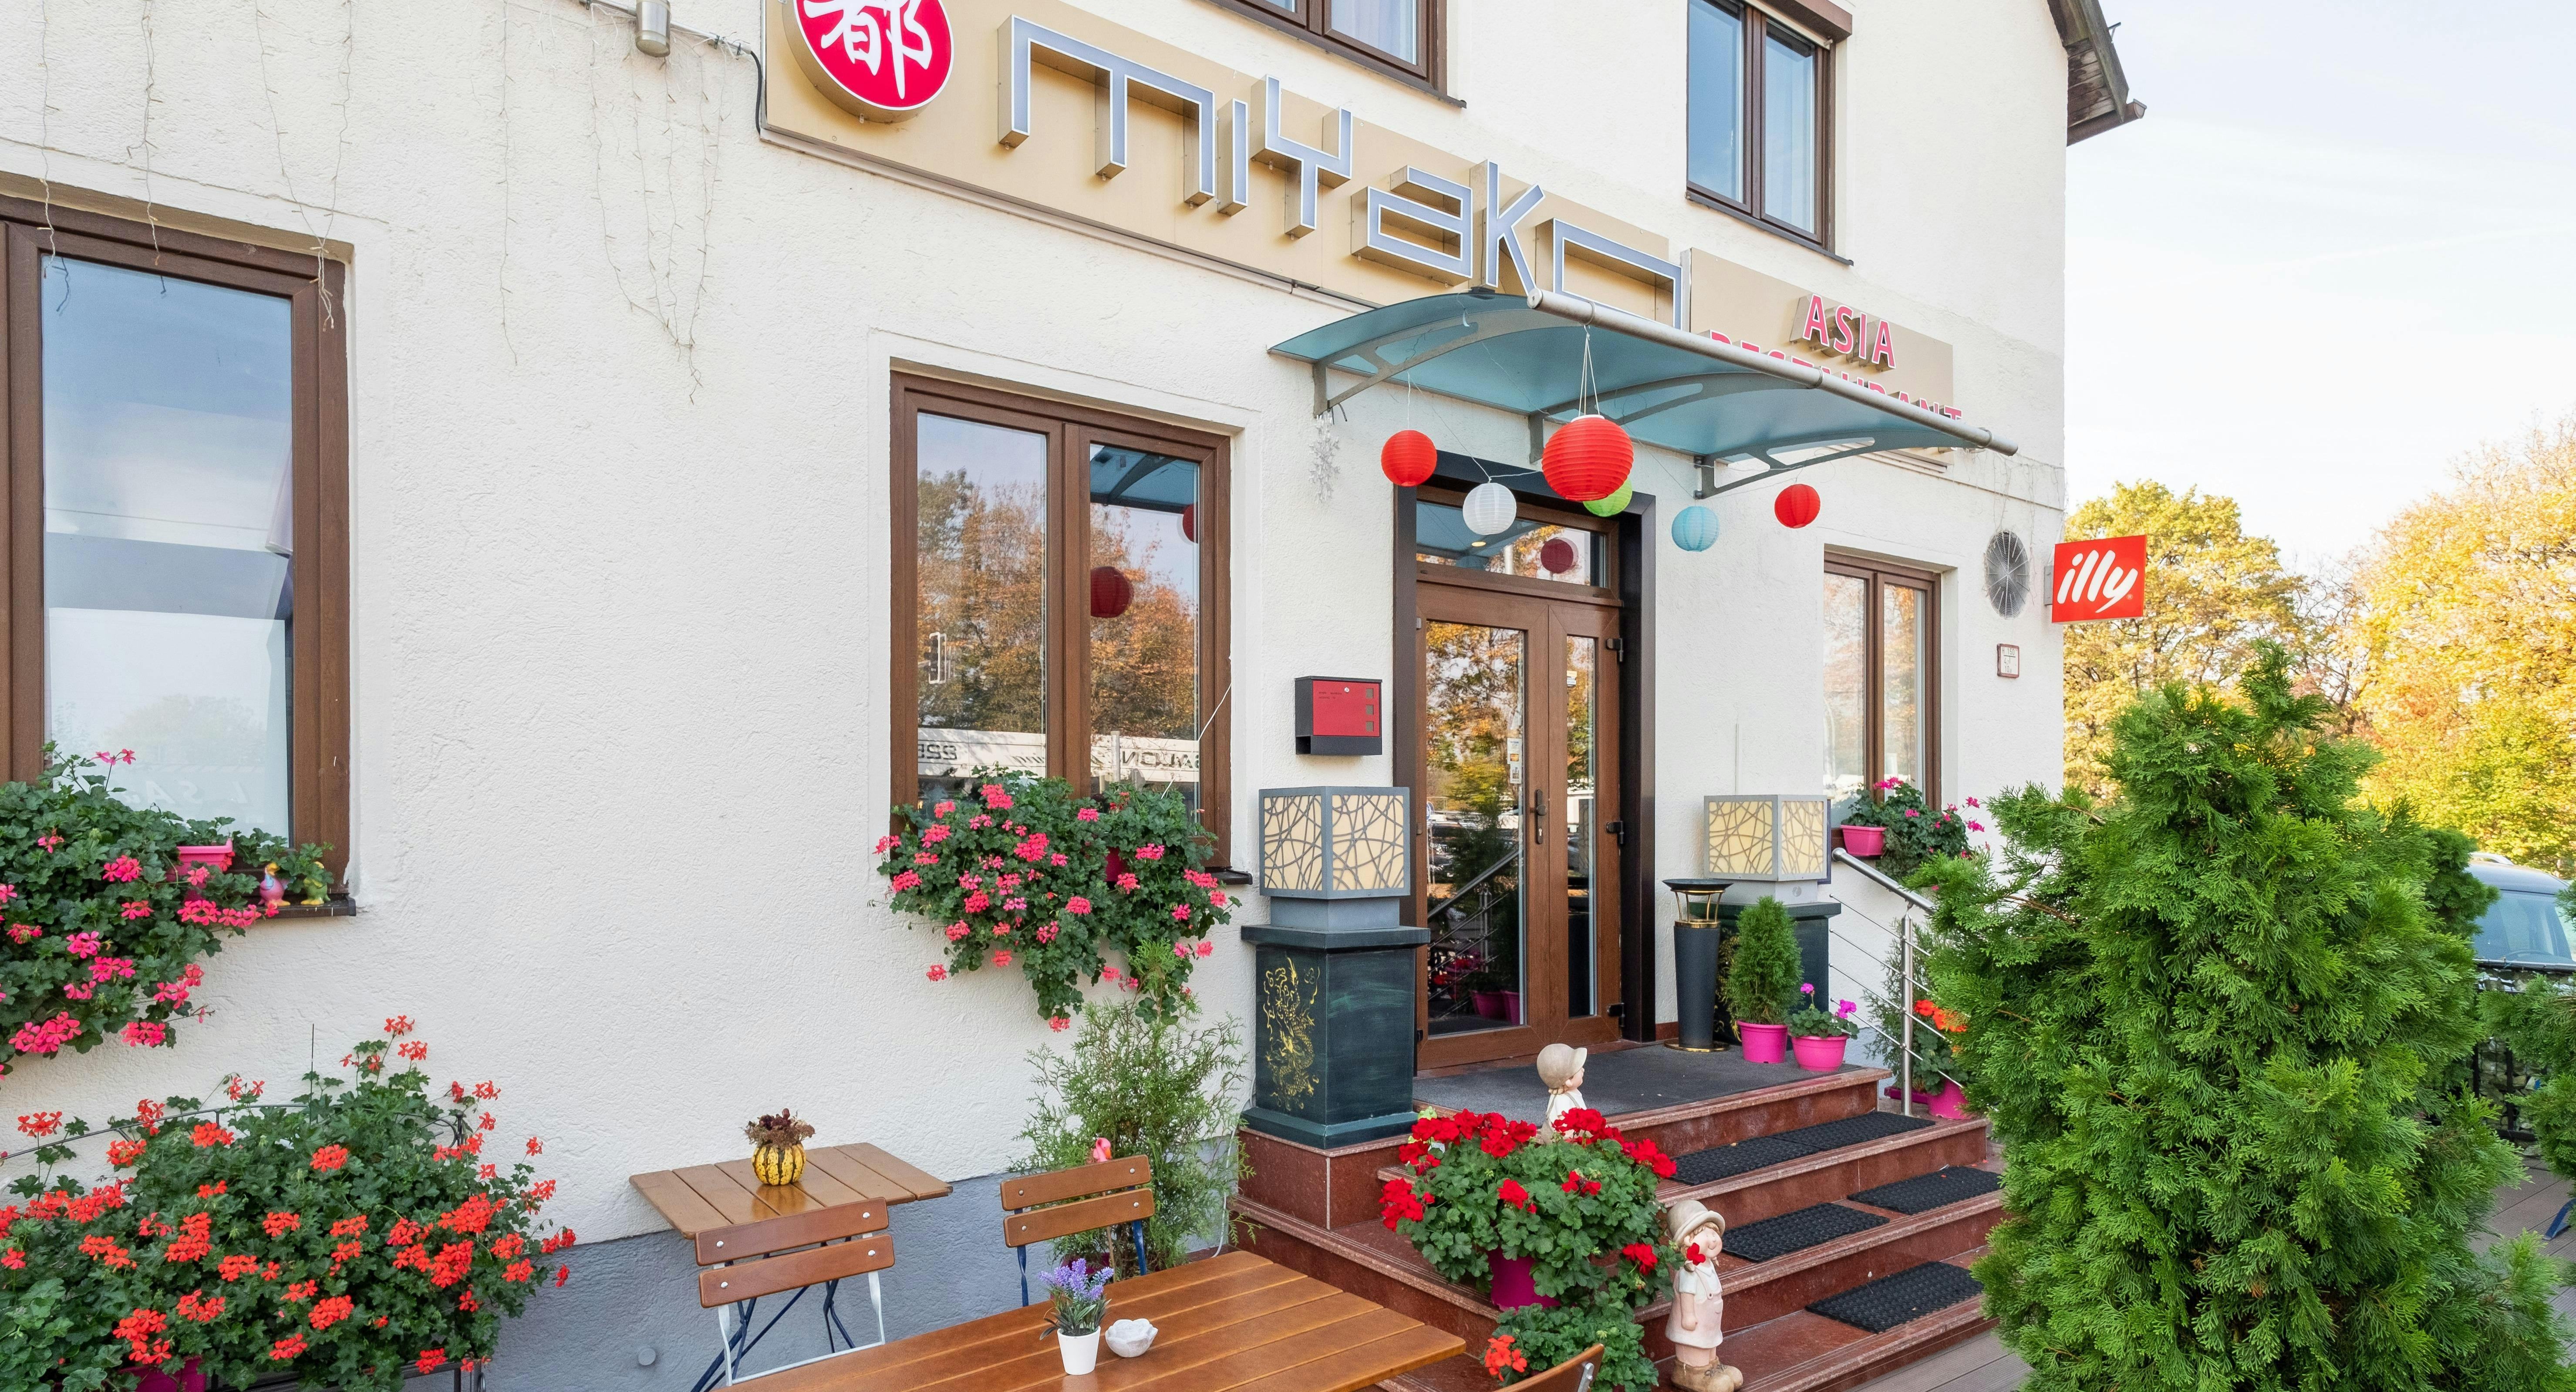 Bilder von Restaurant Miyako in Berg am Laim, München